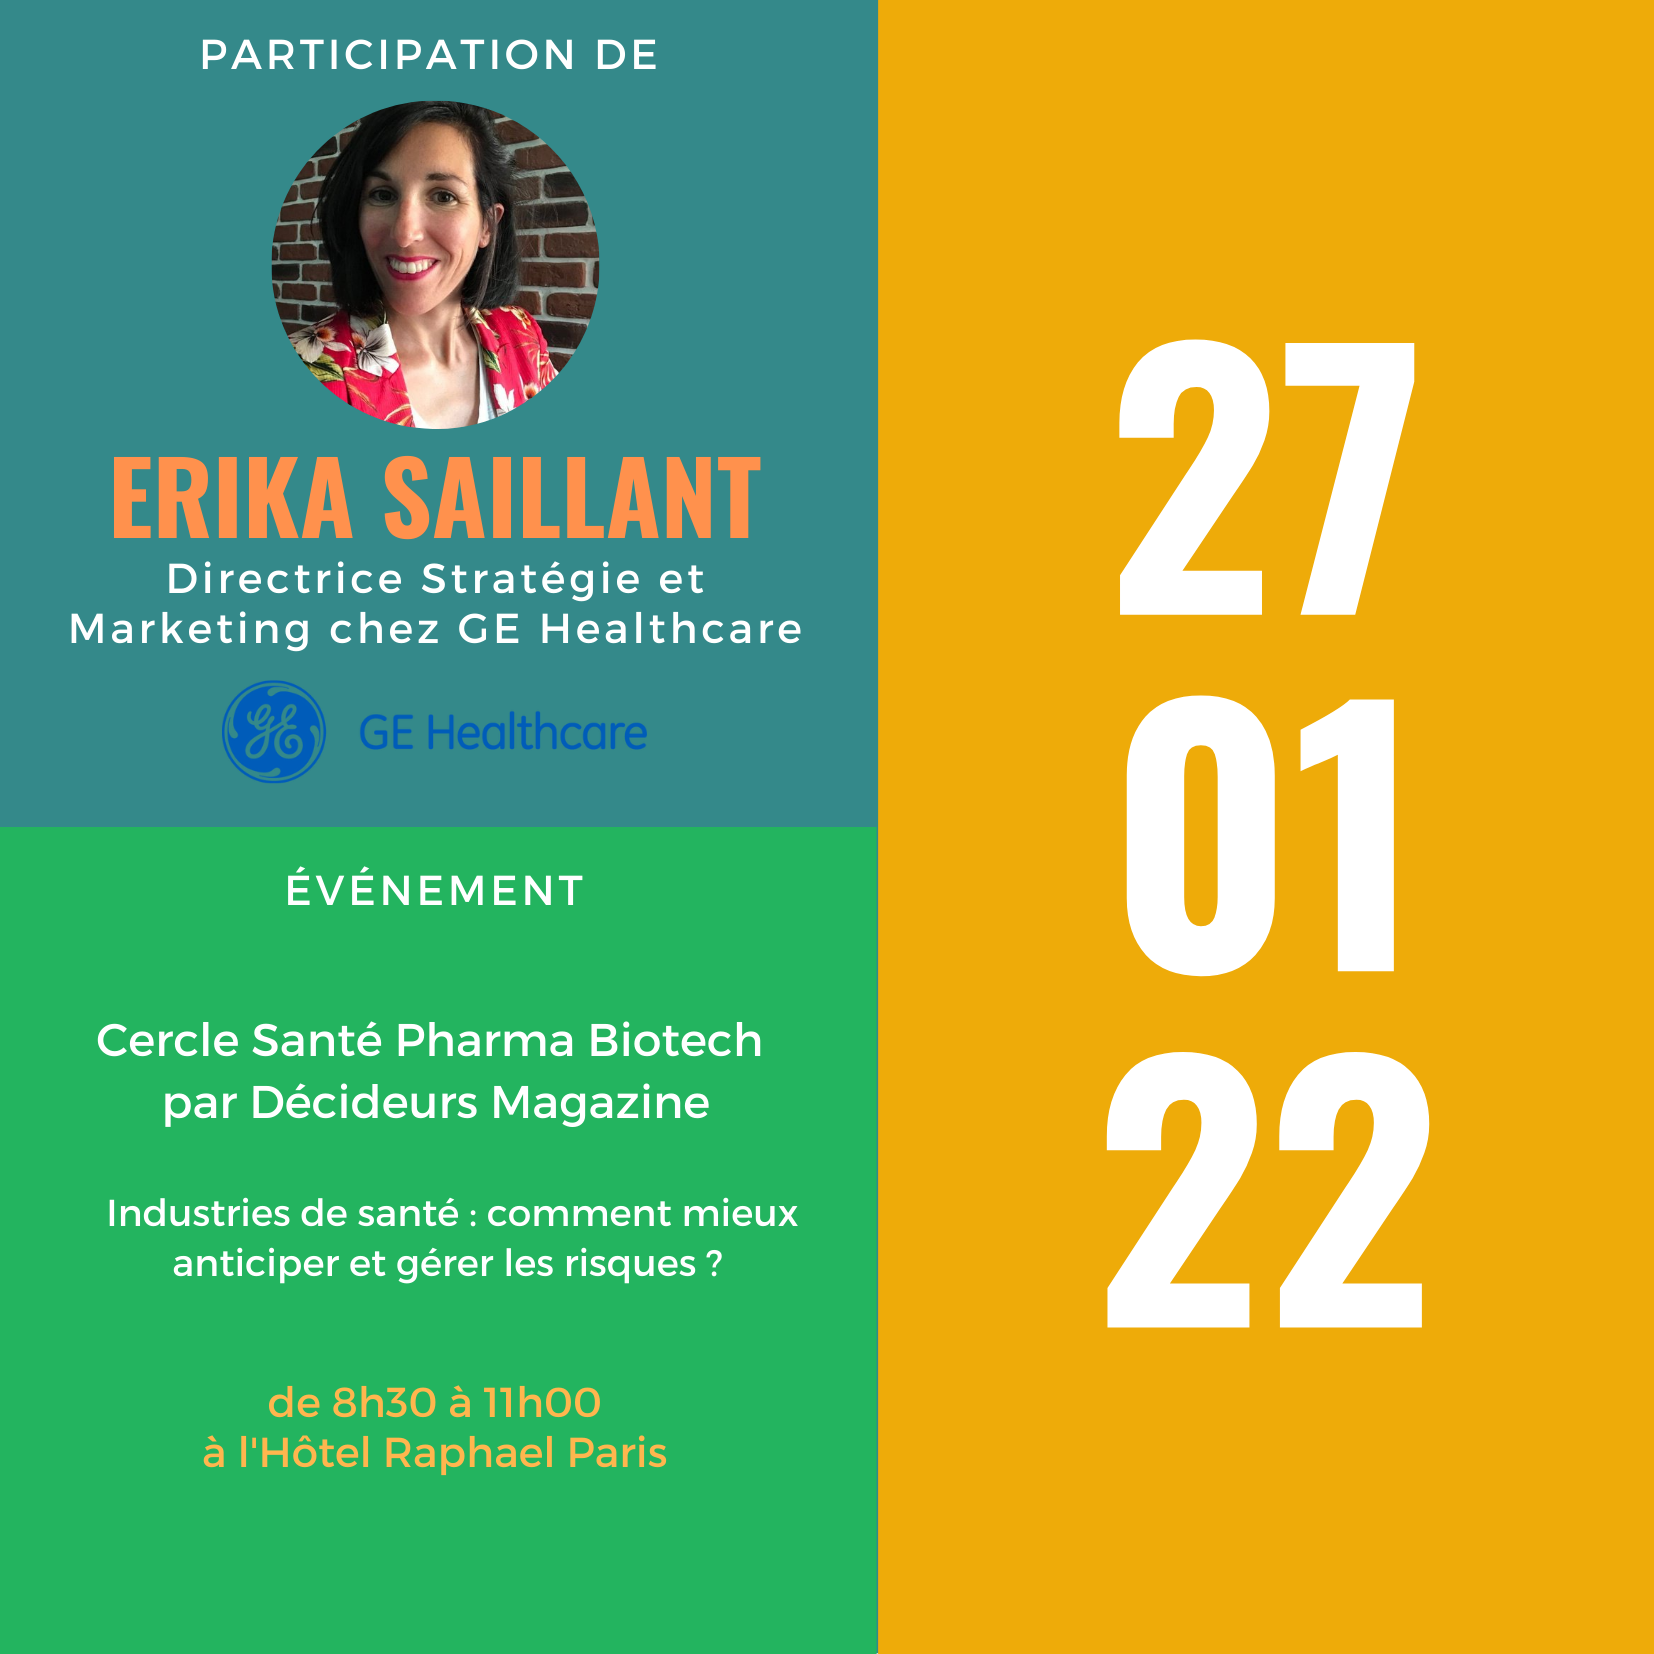 Participation d’Erika Saillant, Directrice Stratégie et Marketing GE Healthcare, au Cercle Santé Pharma Biotech